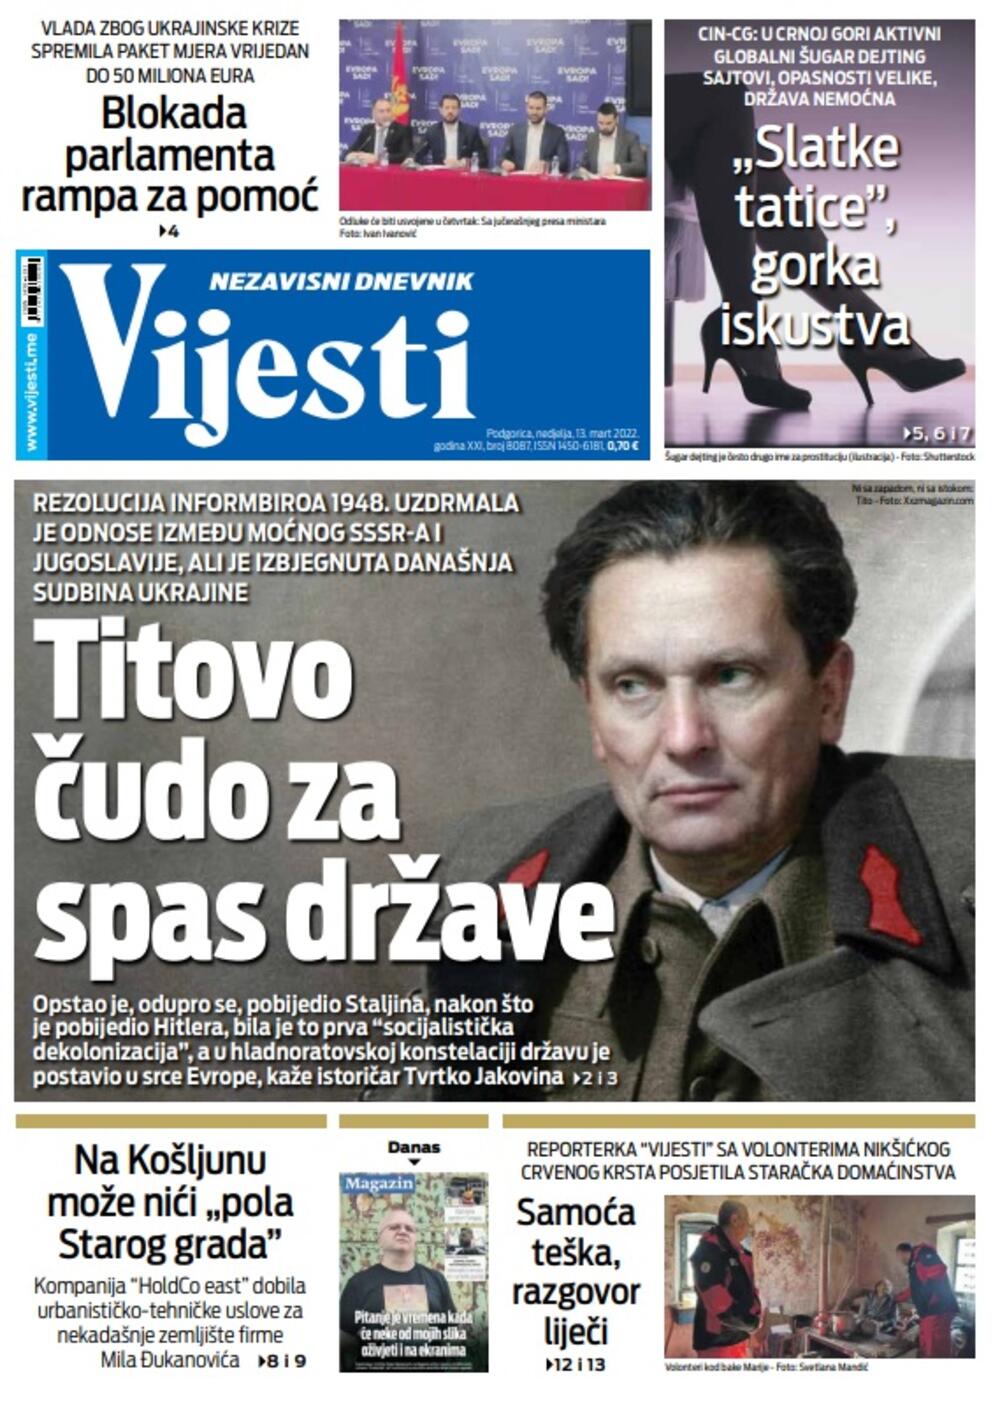 Naslovna strana "Vijesti" za nedjelju 13. mart, Foto: Vijesti